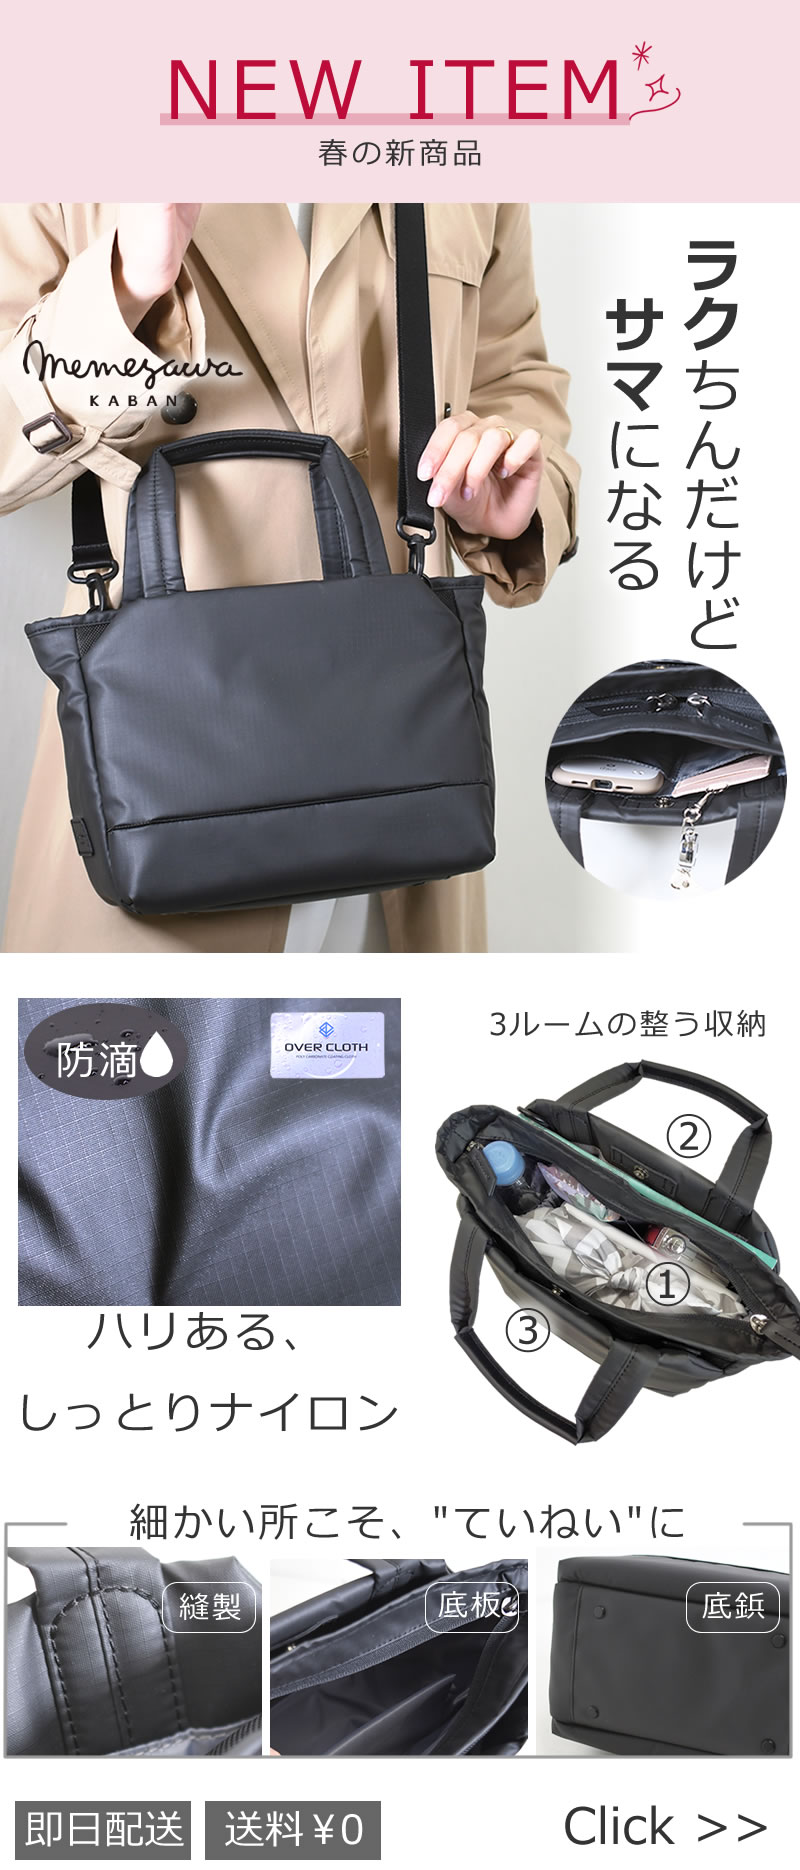 memezawakaban(目々澤鞄）新商品高機能ナイロンシリーズからトートバッグが登場 ラクちんだけどサマになる通勤にも持てる毎日バッグsk2020l